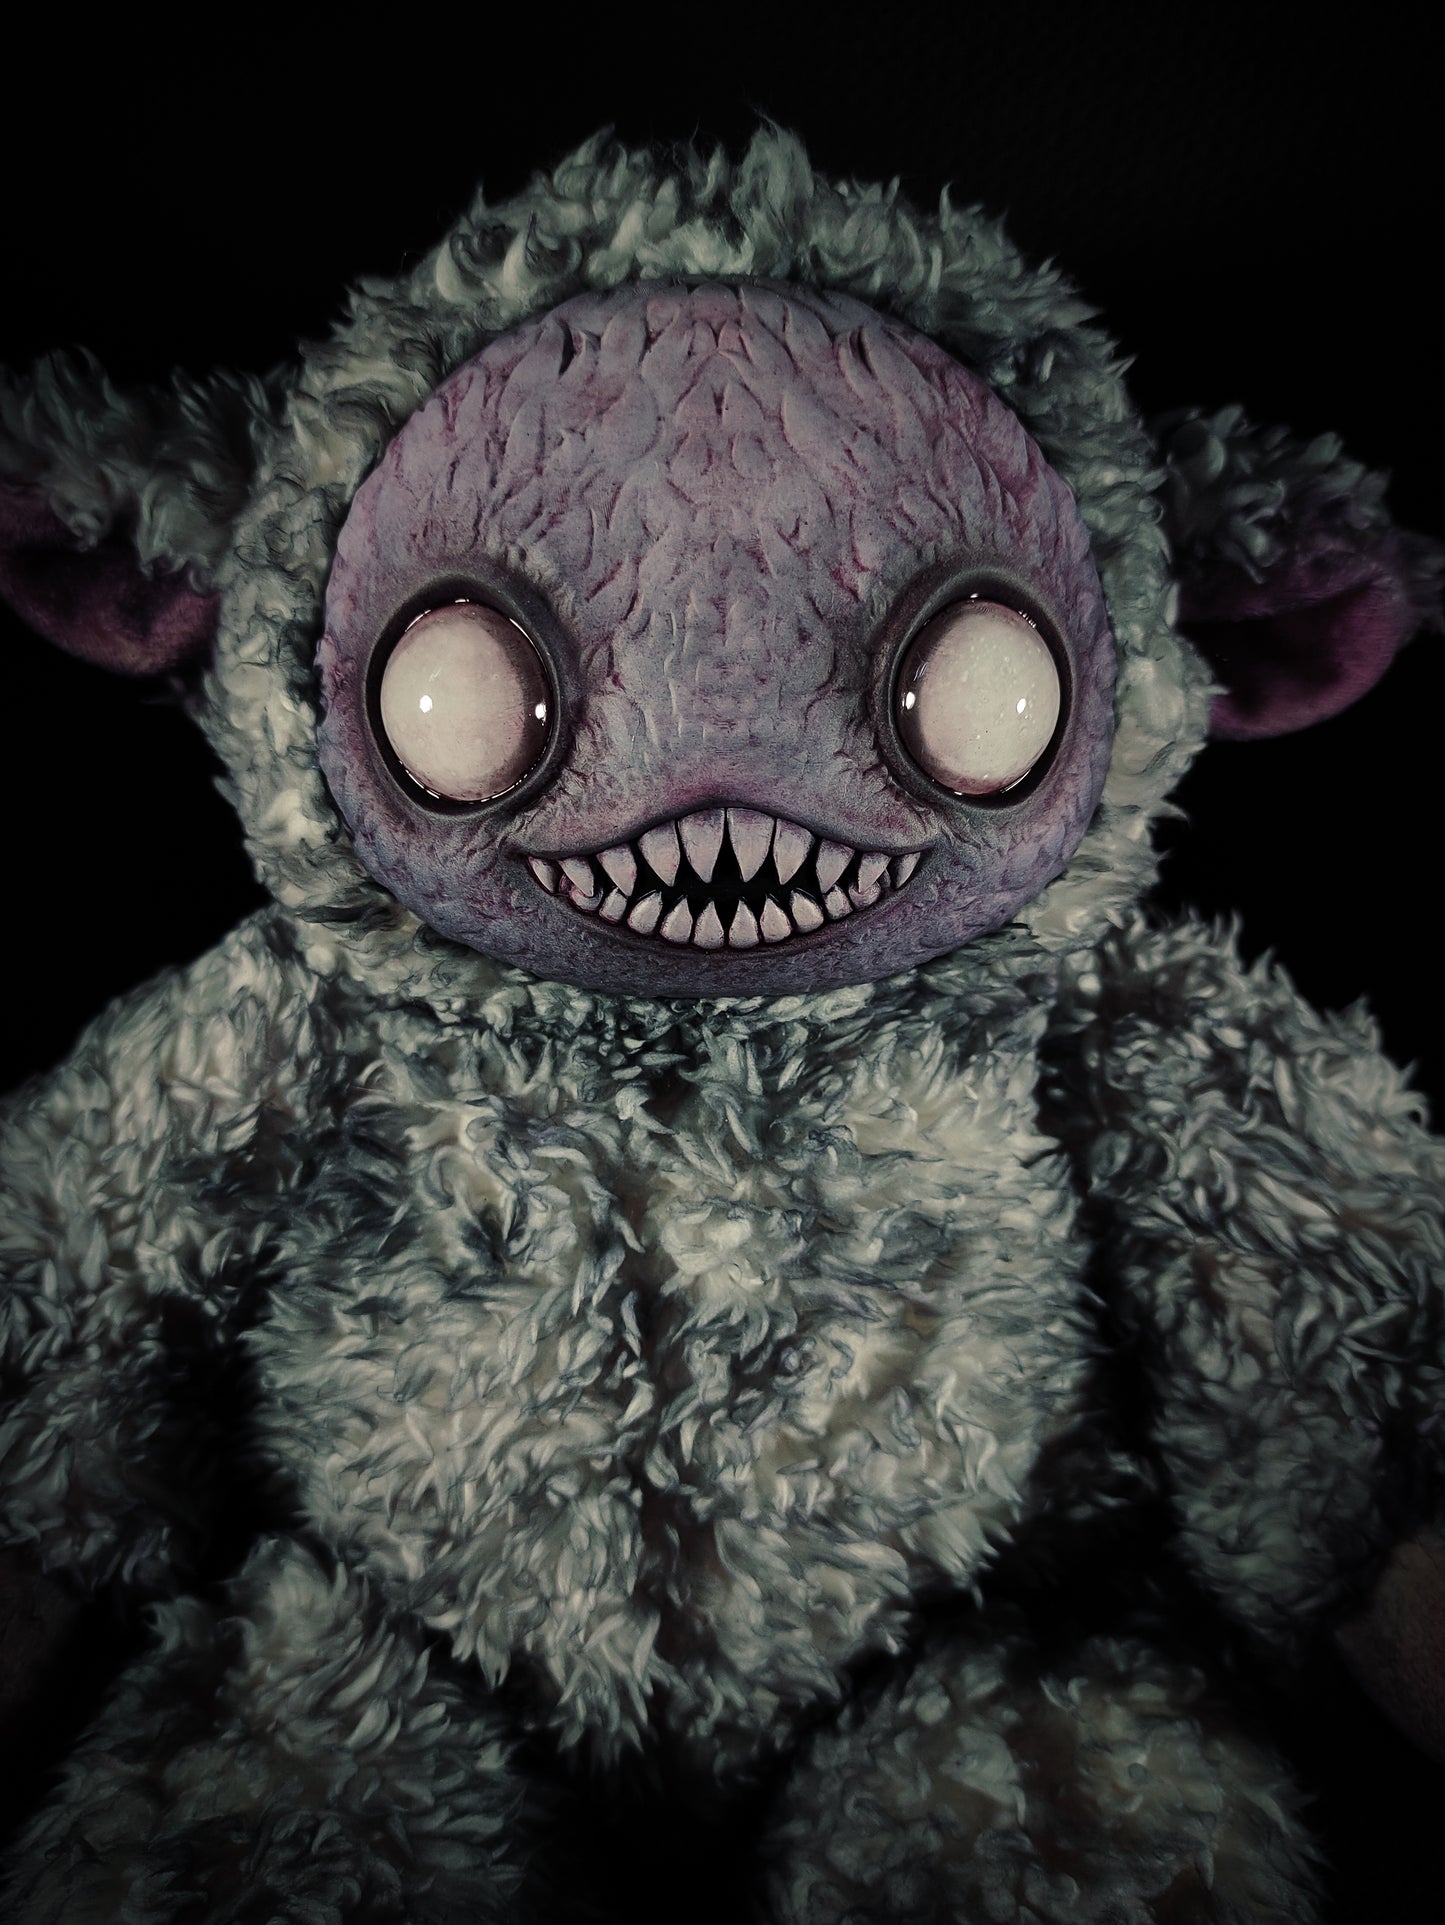 Ningen (Terrible Tartary Ver.) - Monster Art Doll Plush Toy